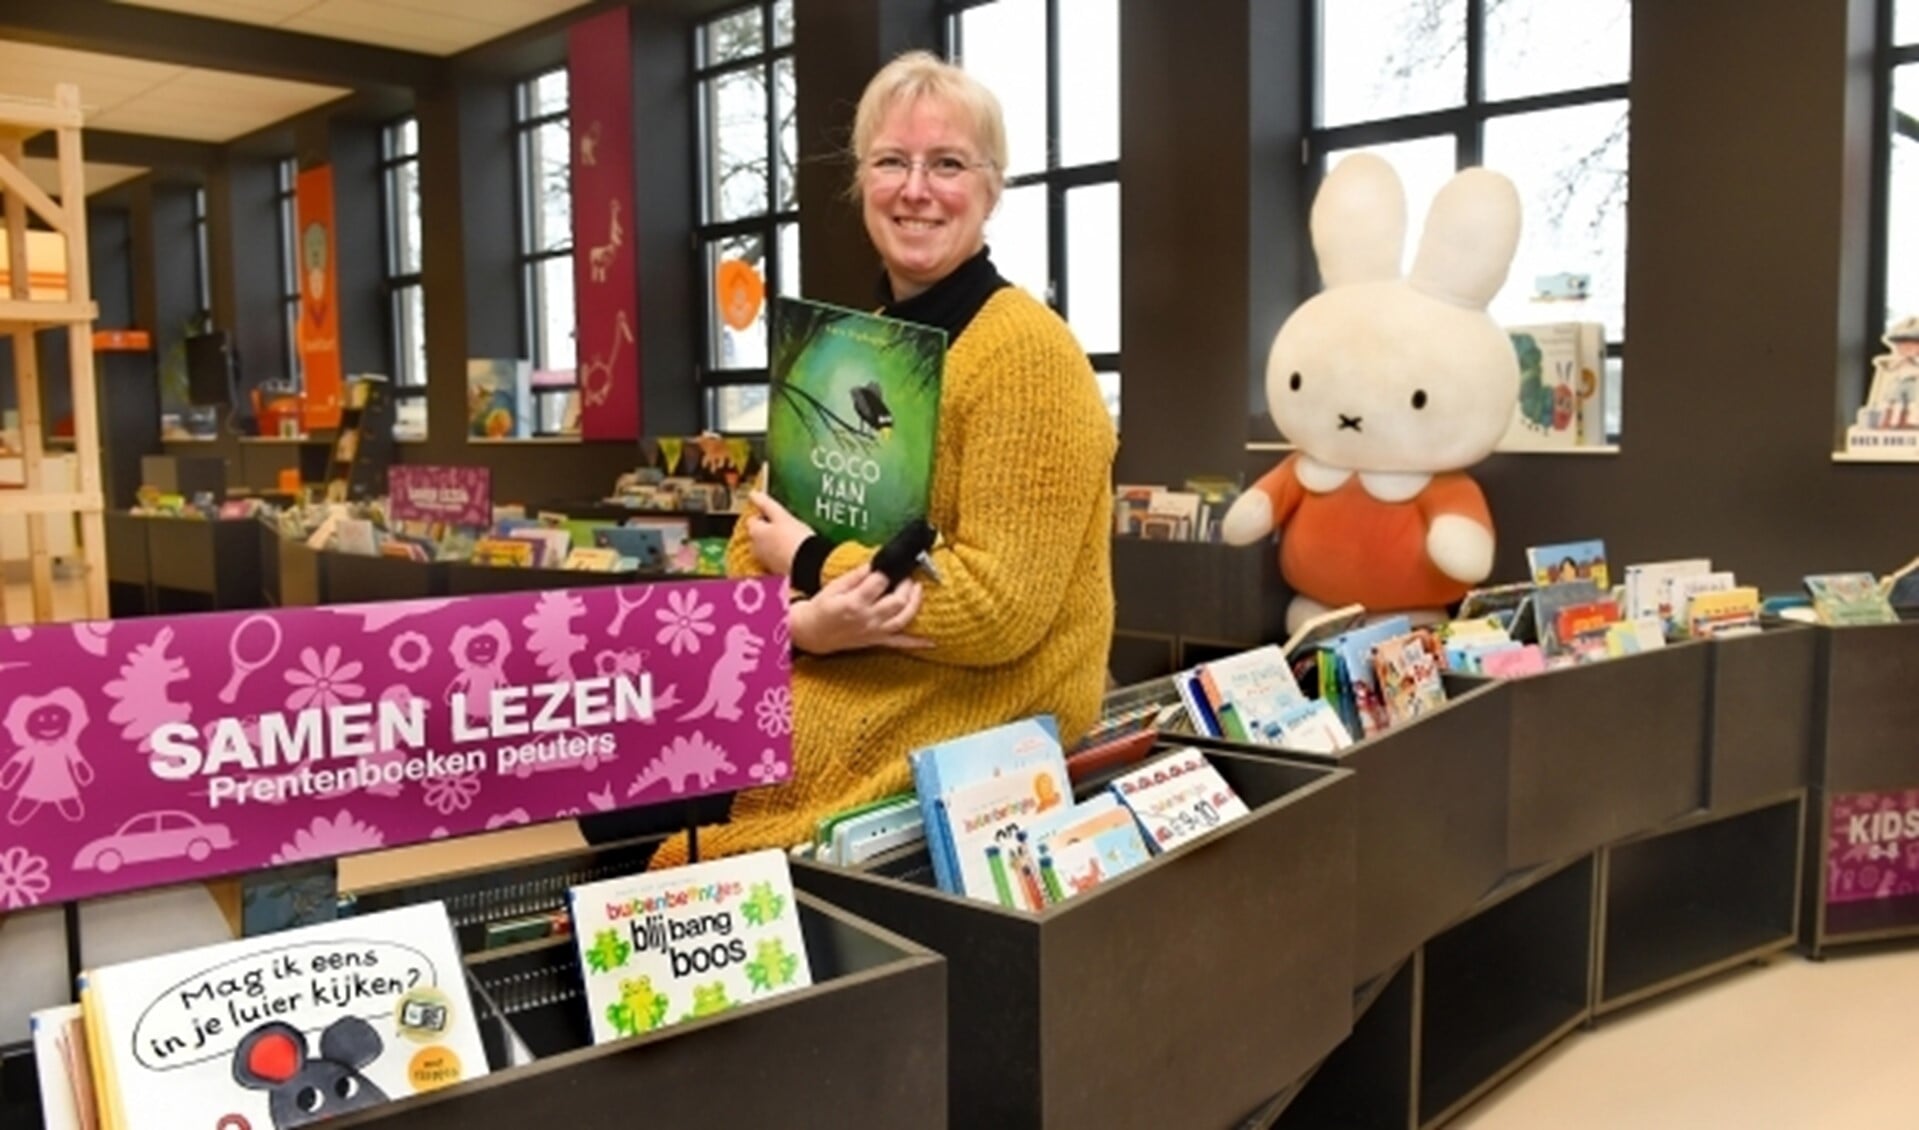 Jacqueline Terwijn in de bibliotheek in Doetinchem met het prentenboek van het jaar, 'Coco kan het' (foto: Roel Kleinpenning)